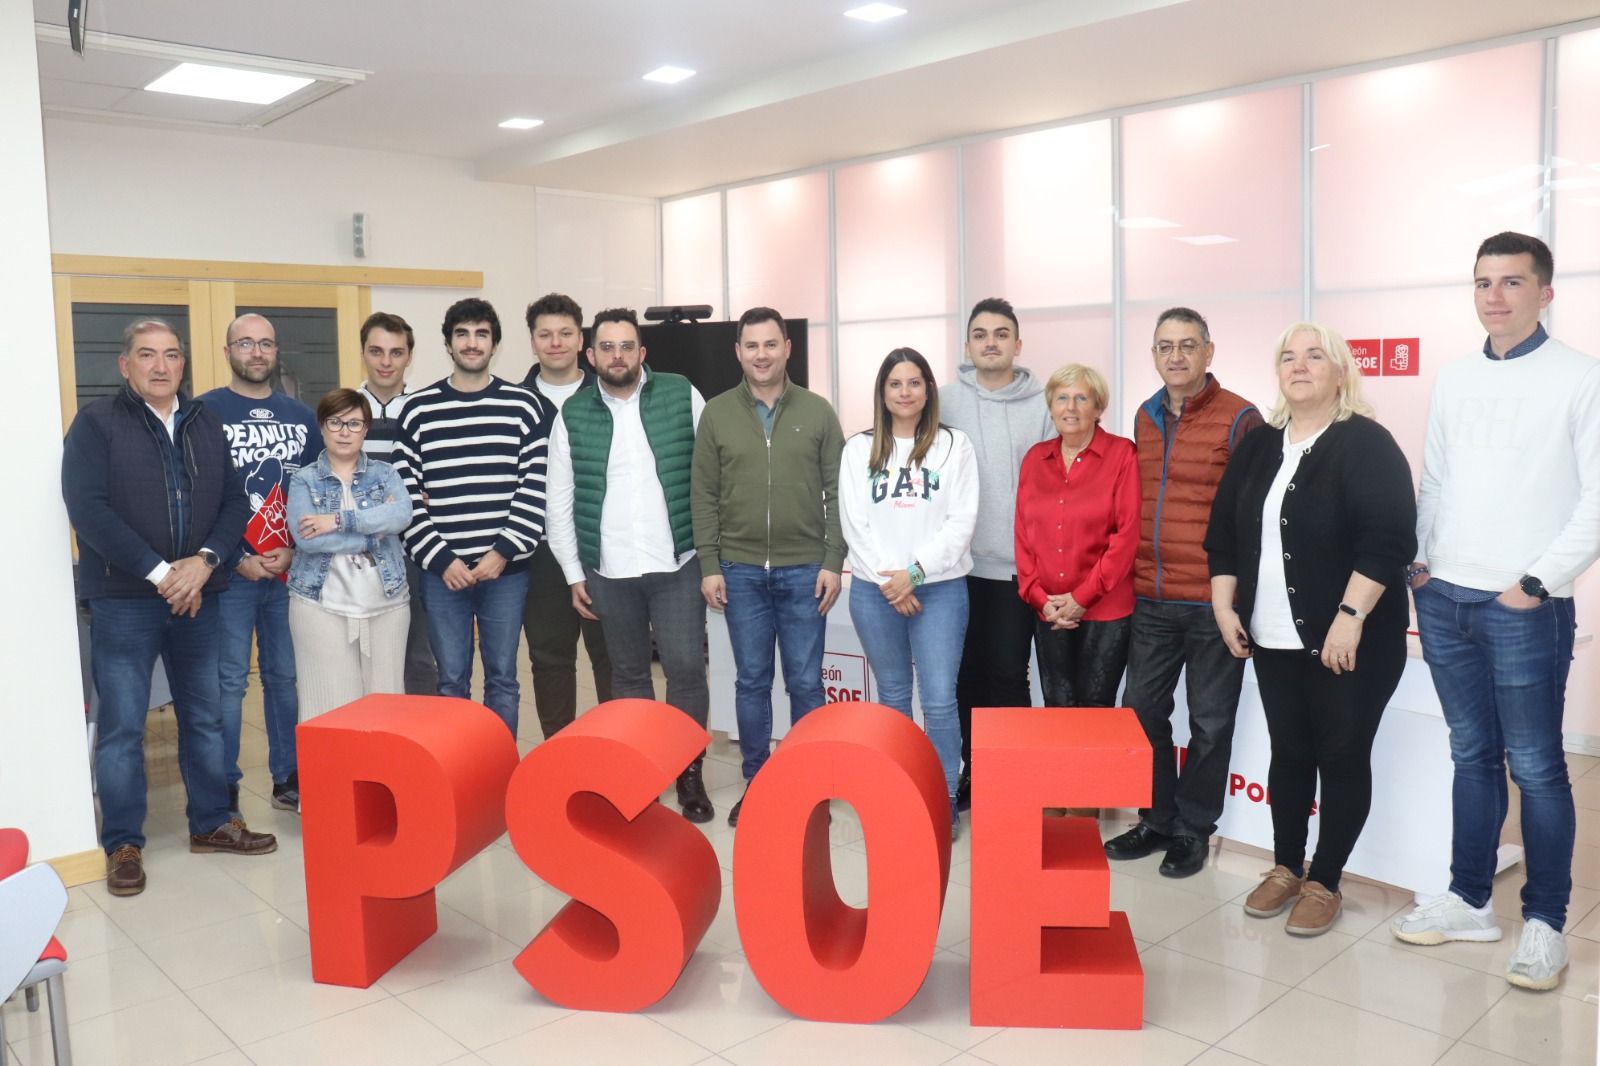 Representantes del PSOE y Juventudes Socialistas en León. | L.N.C.